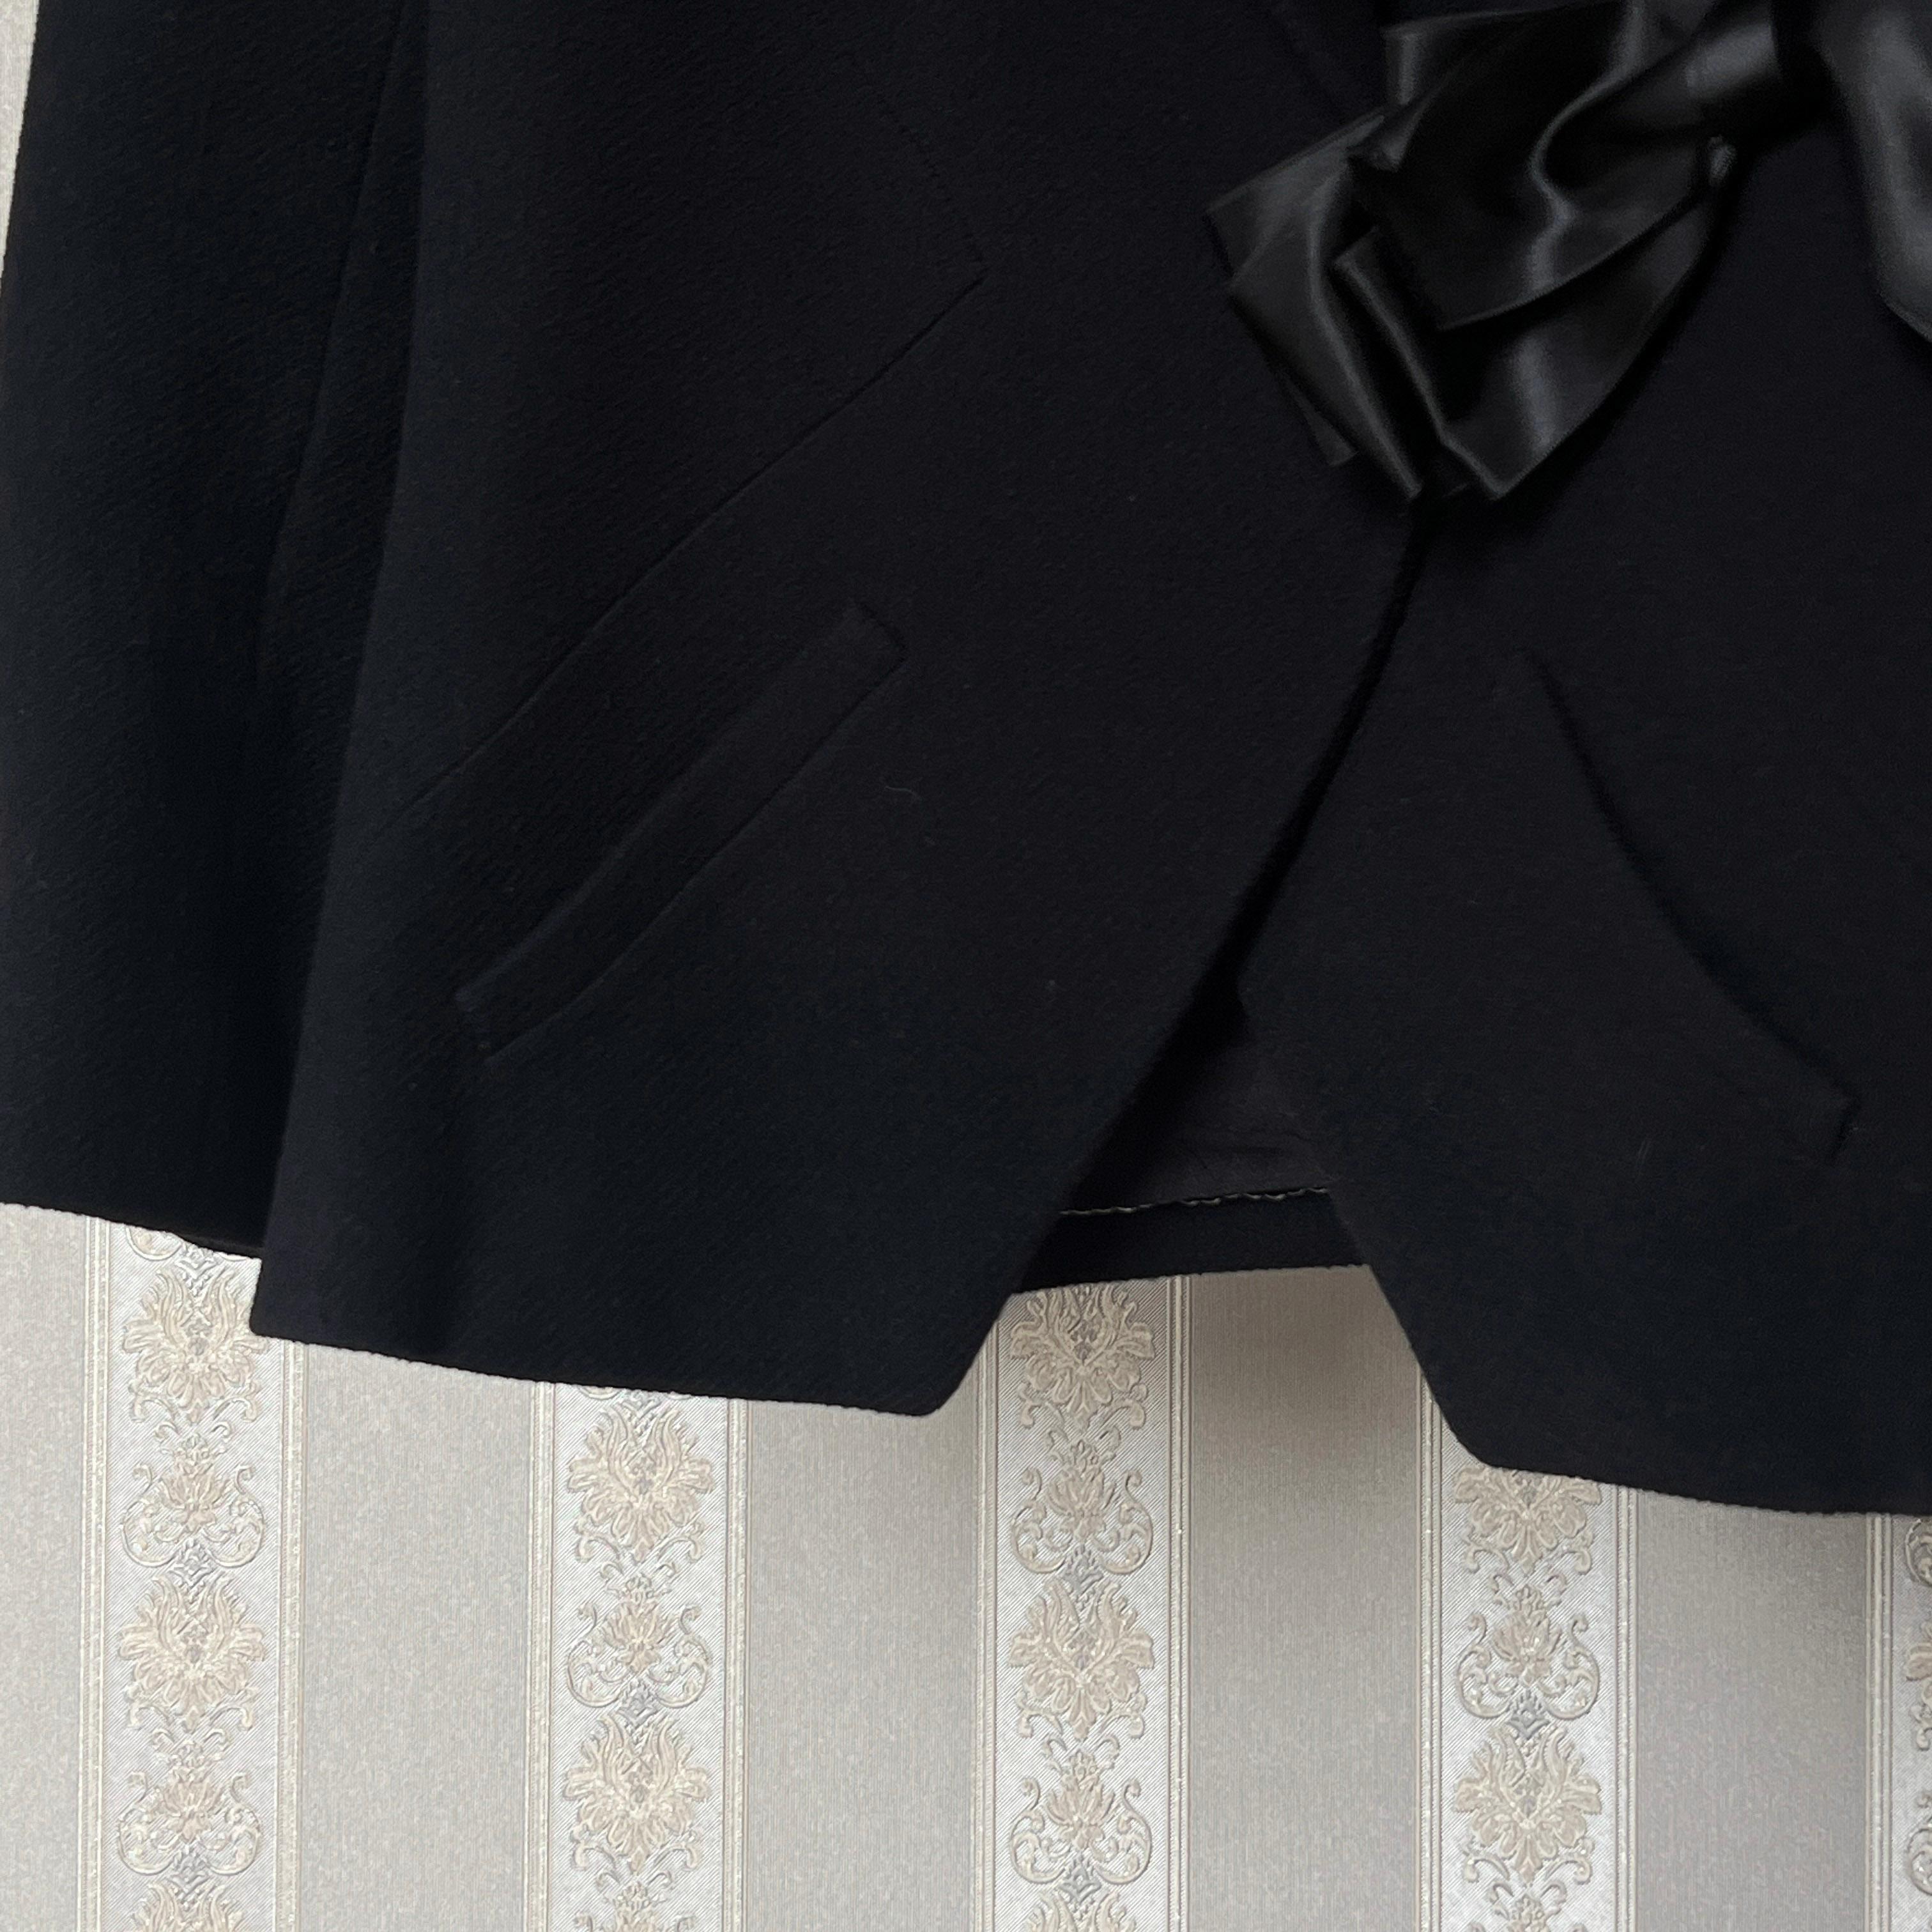 Chanel New Paris / London Runway Black Tweed Jacket For Sale 6